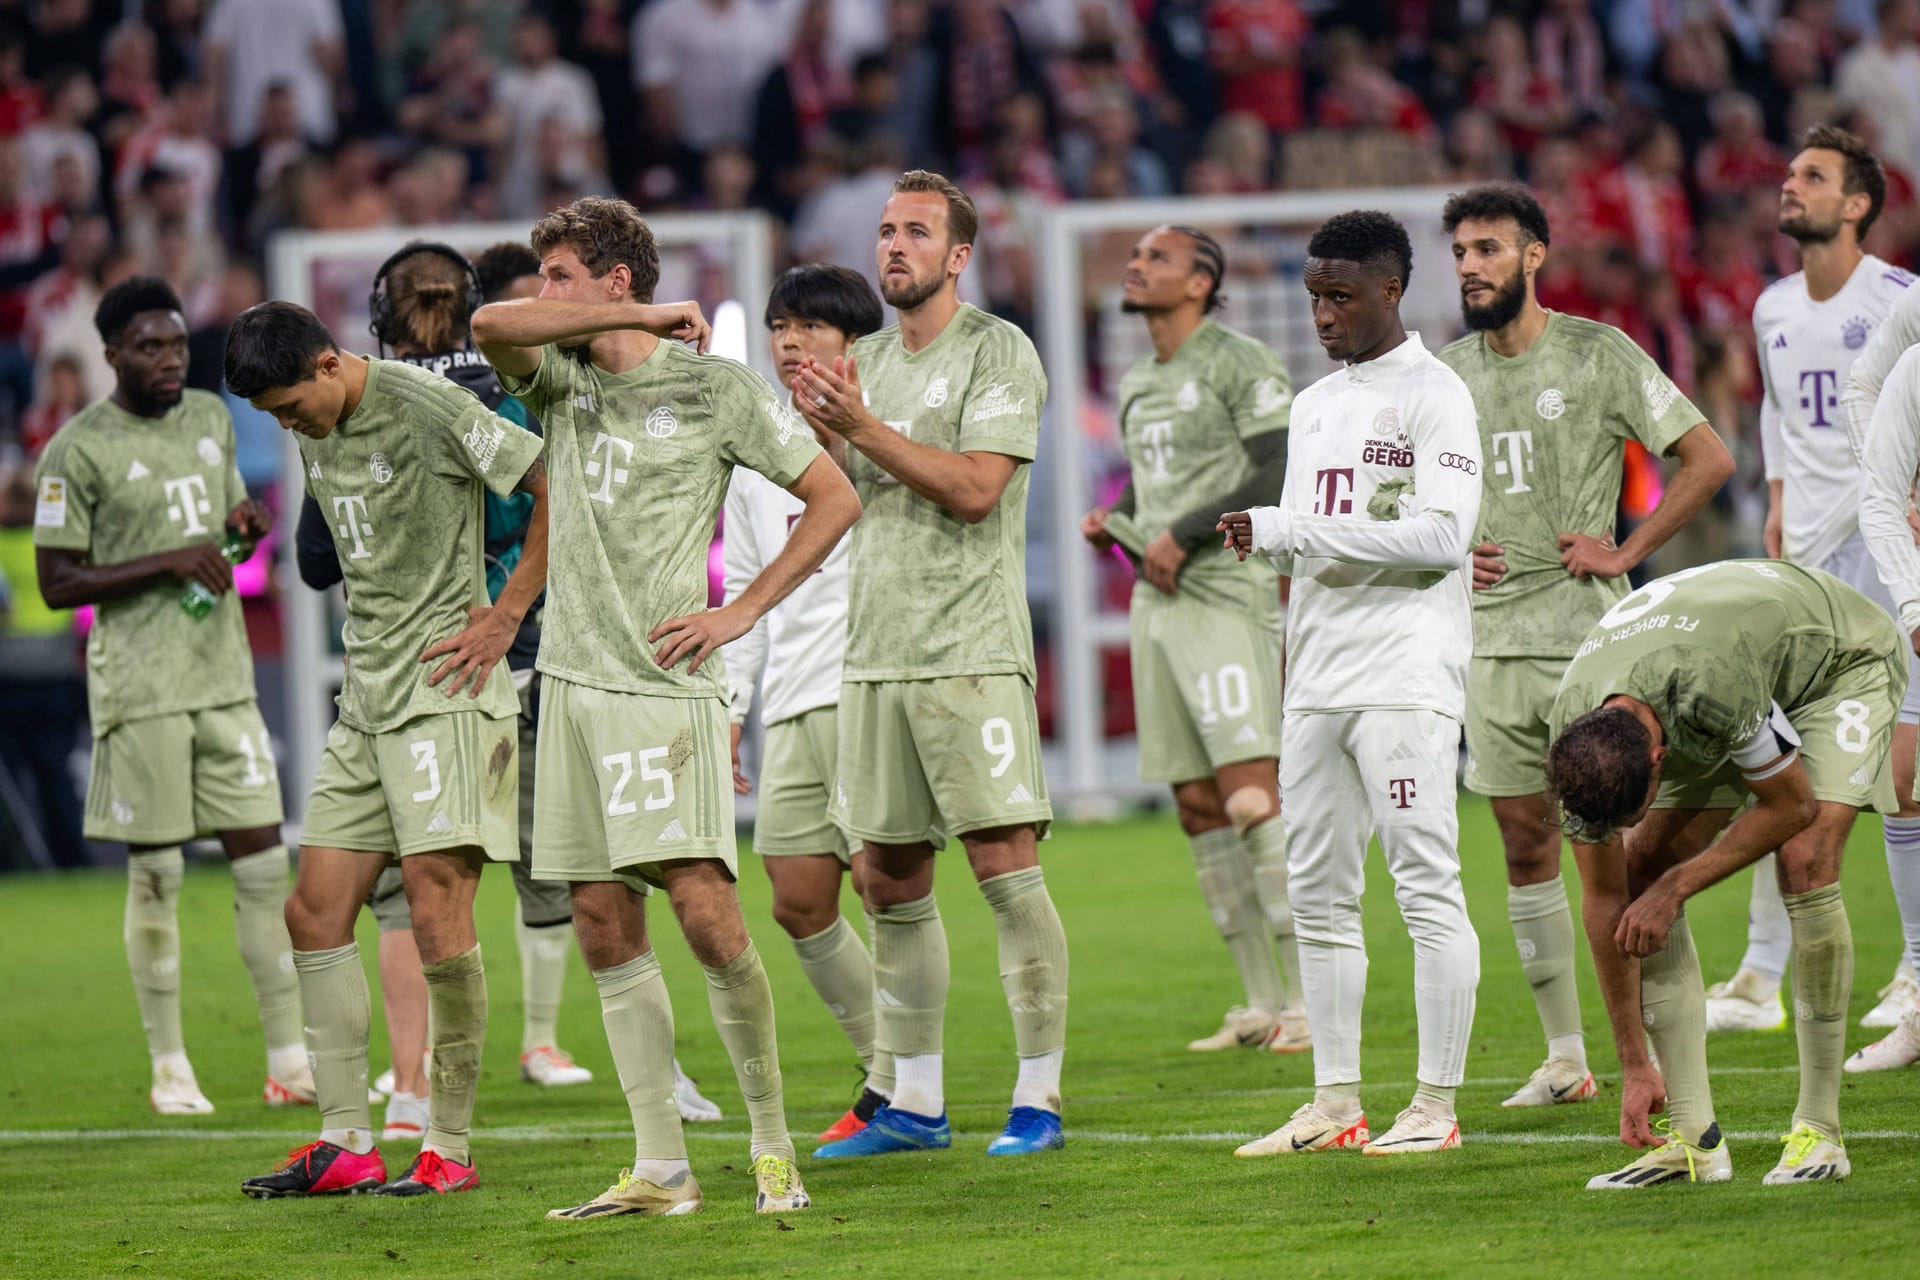 Nach dem späten Treffer von Leon Goretzka verspielen die Münchner den schon greifbaren Sieg noch in der Nachspielzeit. Dabei zeigen einige Münchner ungewohnte Schwächen. Der FC Bayern in der Einzelkritik